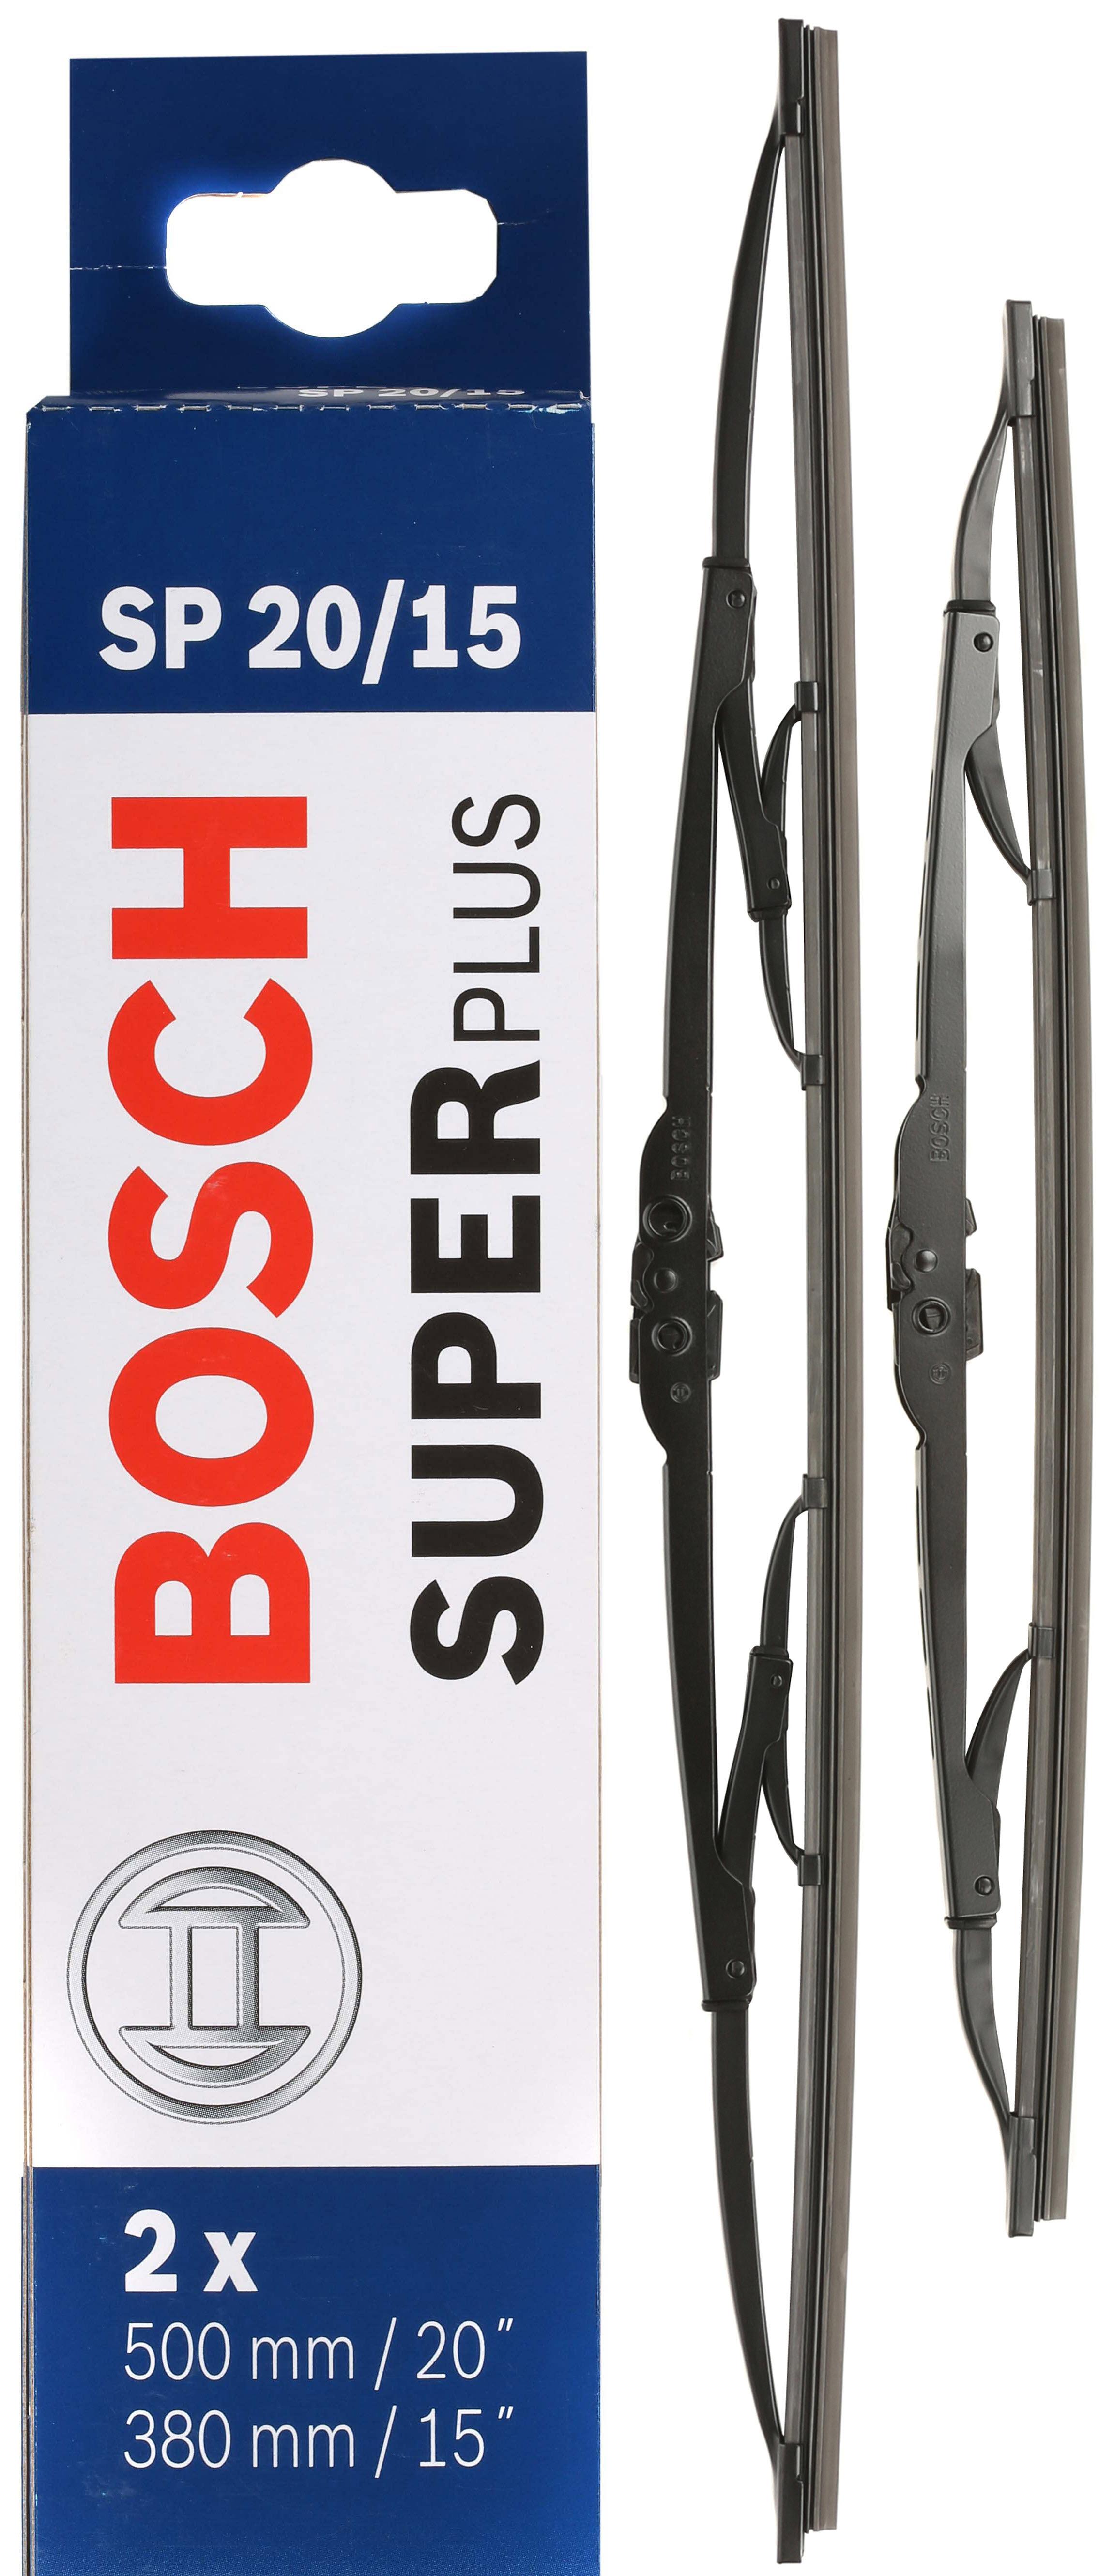 Bosch Sp20/15 Wiper Blades - Front Pair